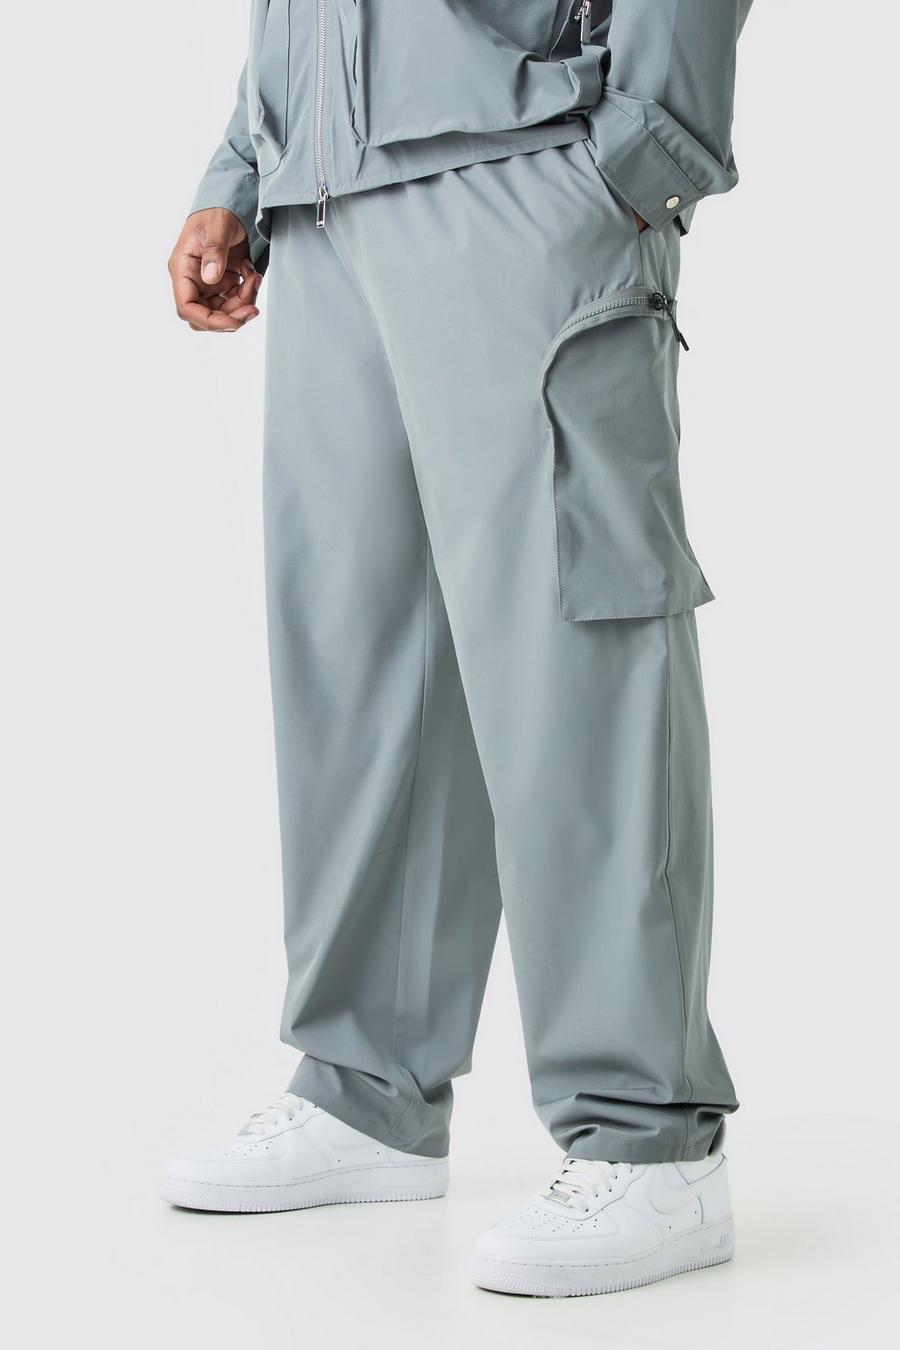 Pantalón Plus cargo elástico técnico con cintura elástica y cremallera, Charcoal